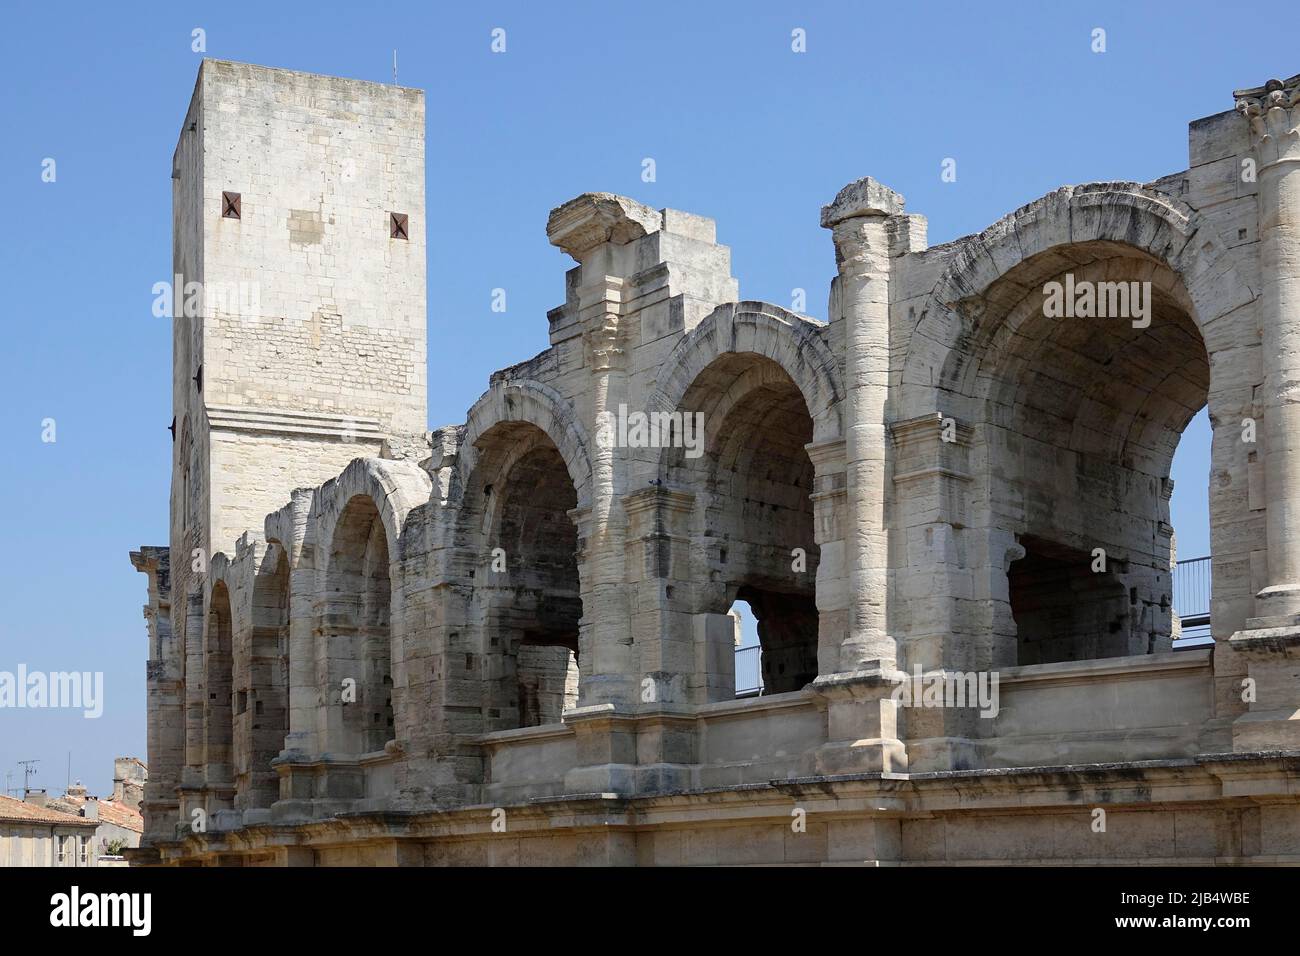 Amphitheater der römischen Arena mit erhaltenem mittelalterlichem Turm, Arles, Departement Bouches-du-Rhone, Region Provence Alpes Cote d'Azur, Frankreich, Mittelmeer Stockfoto